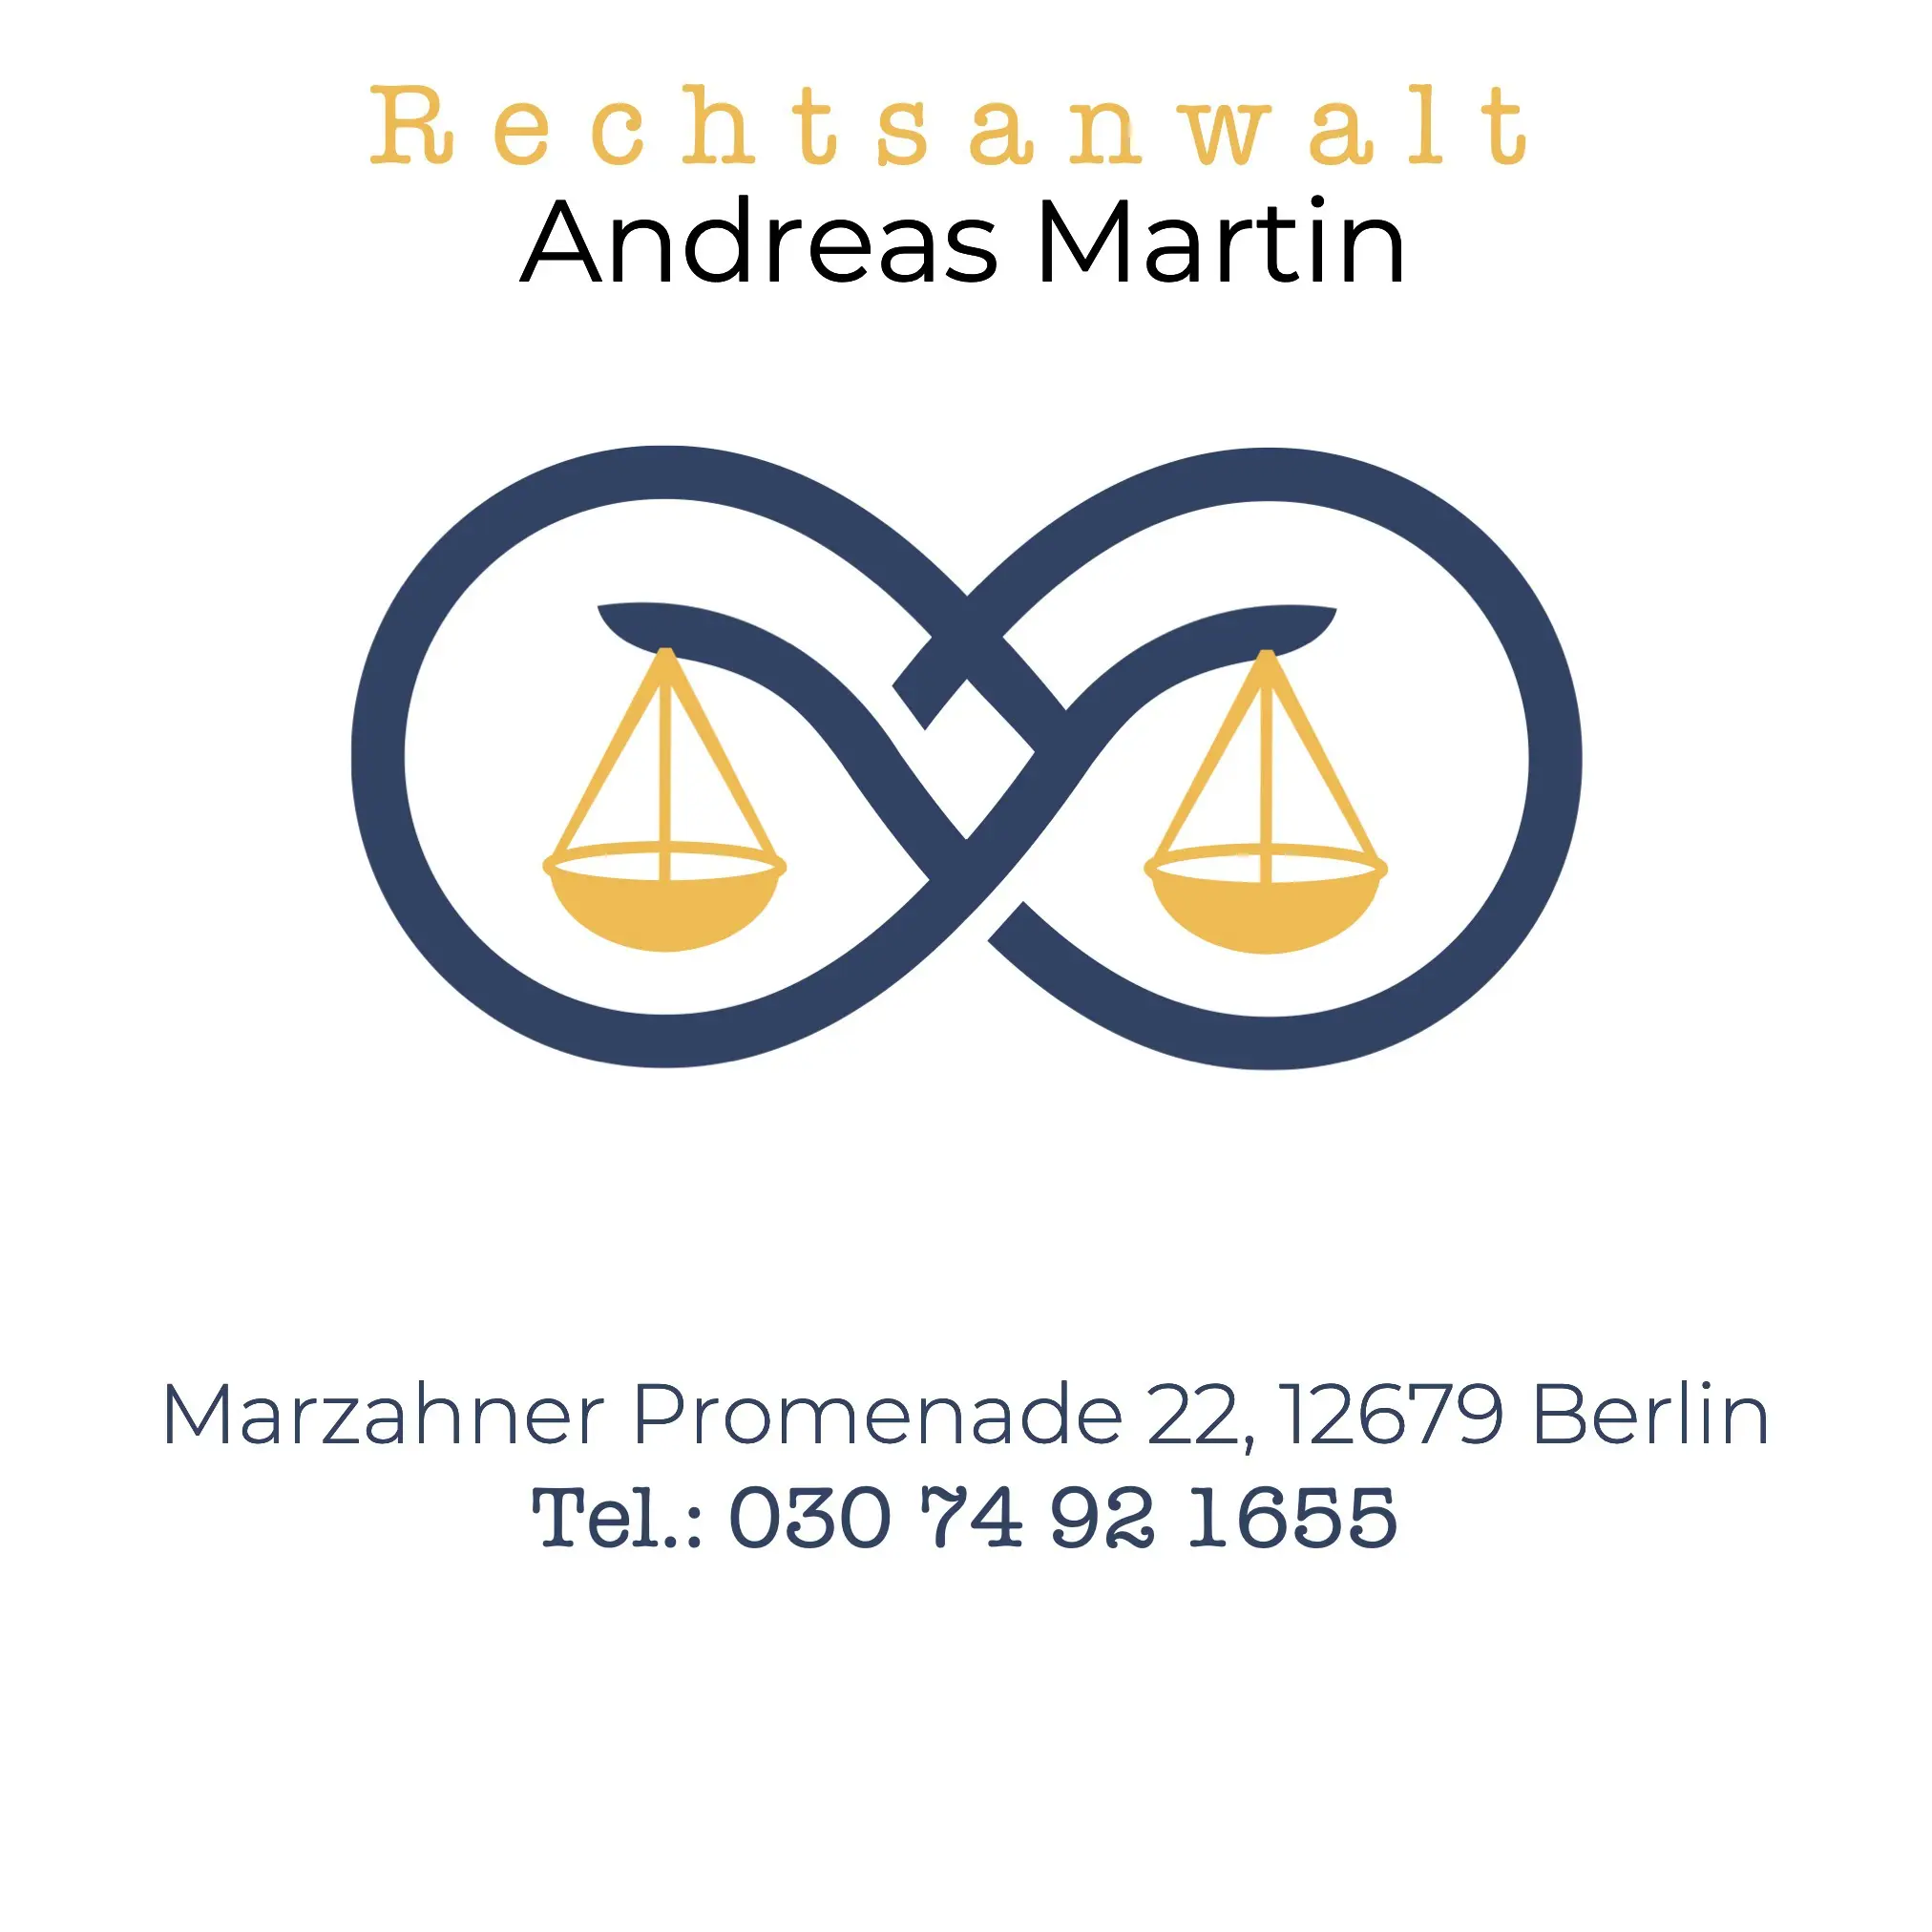 (c) Anwalt-marzahn.de